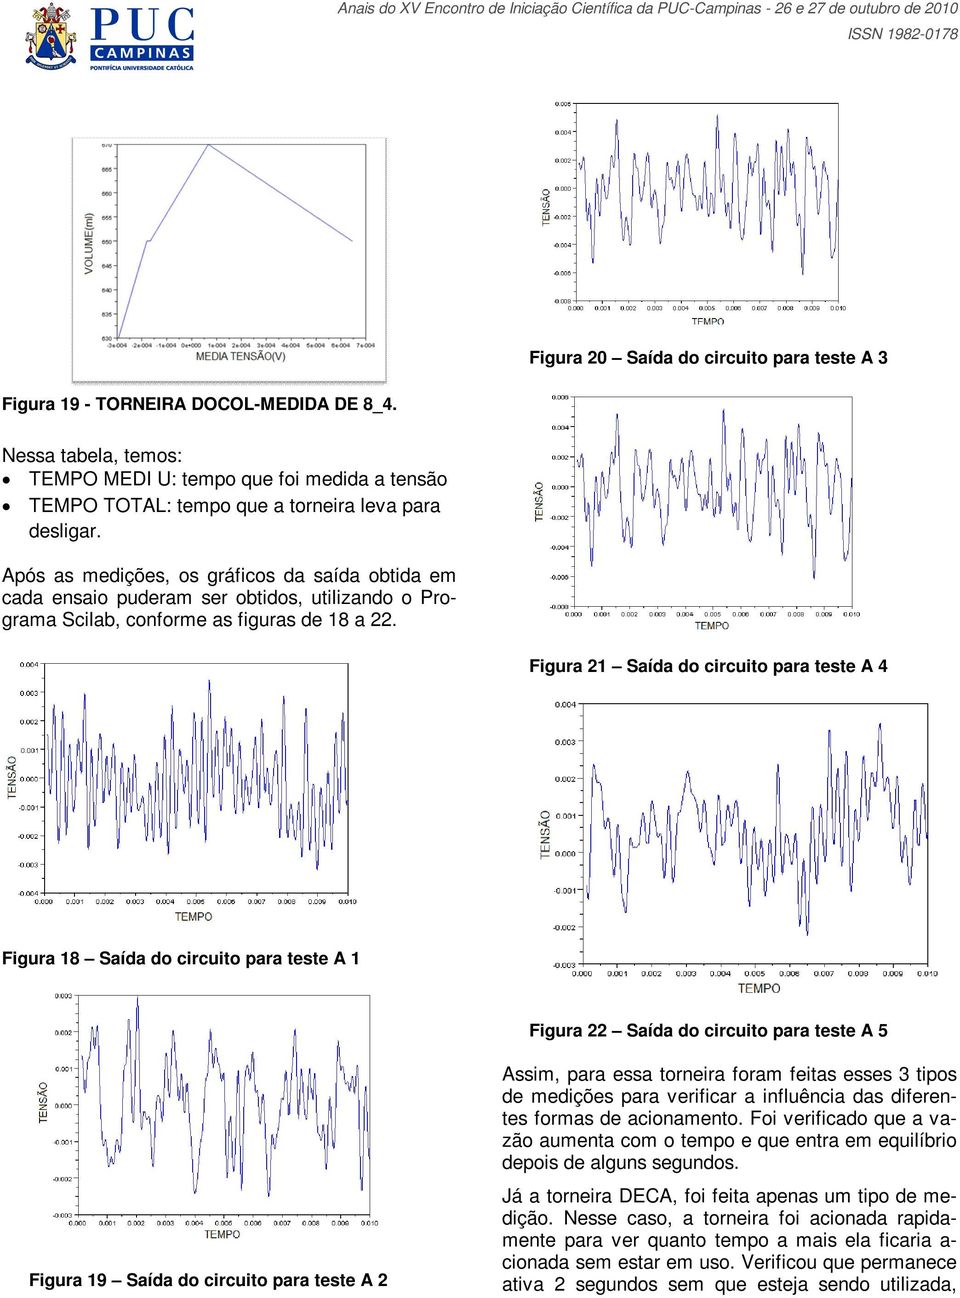 Após as medições, os gráficos da saída obtida em cada ensaio puderam ser obtidos, utilizando o Programa Scilab, conforme as figuras de 18 a 22.